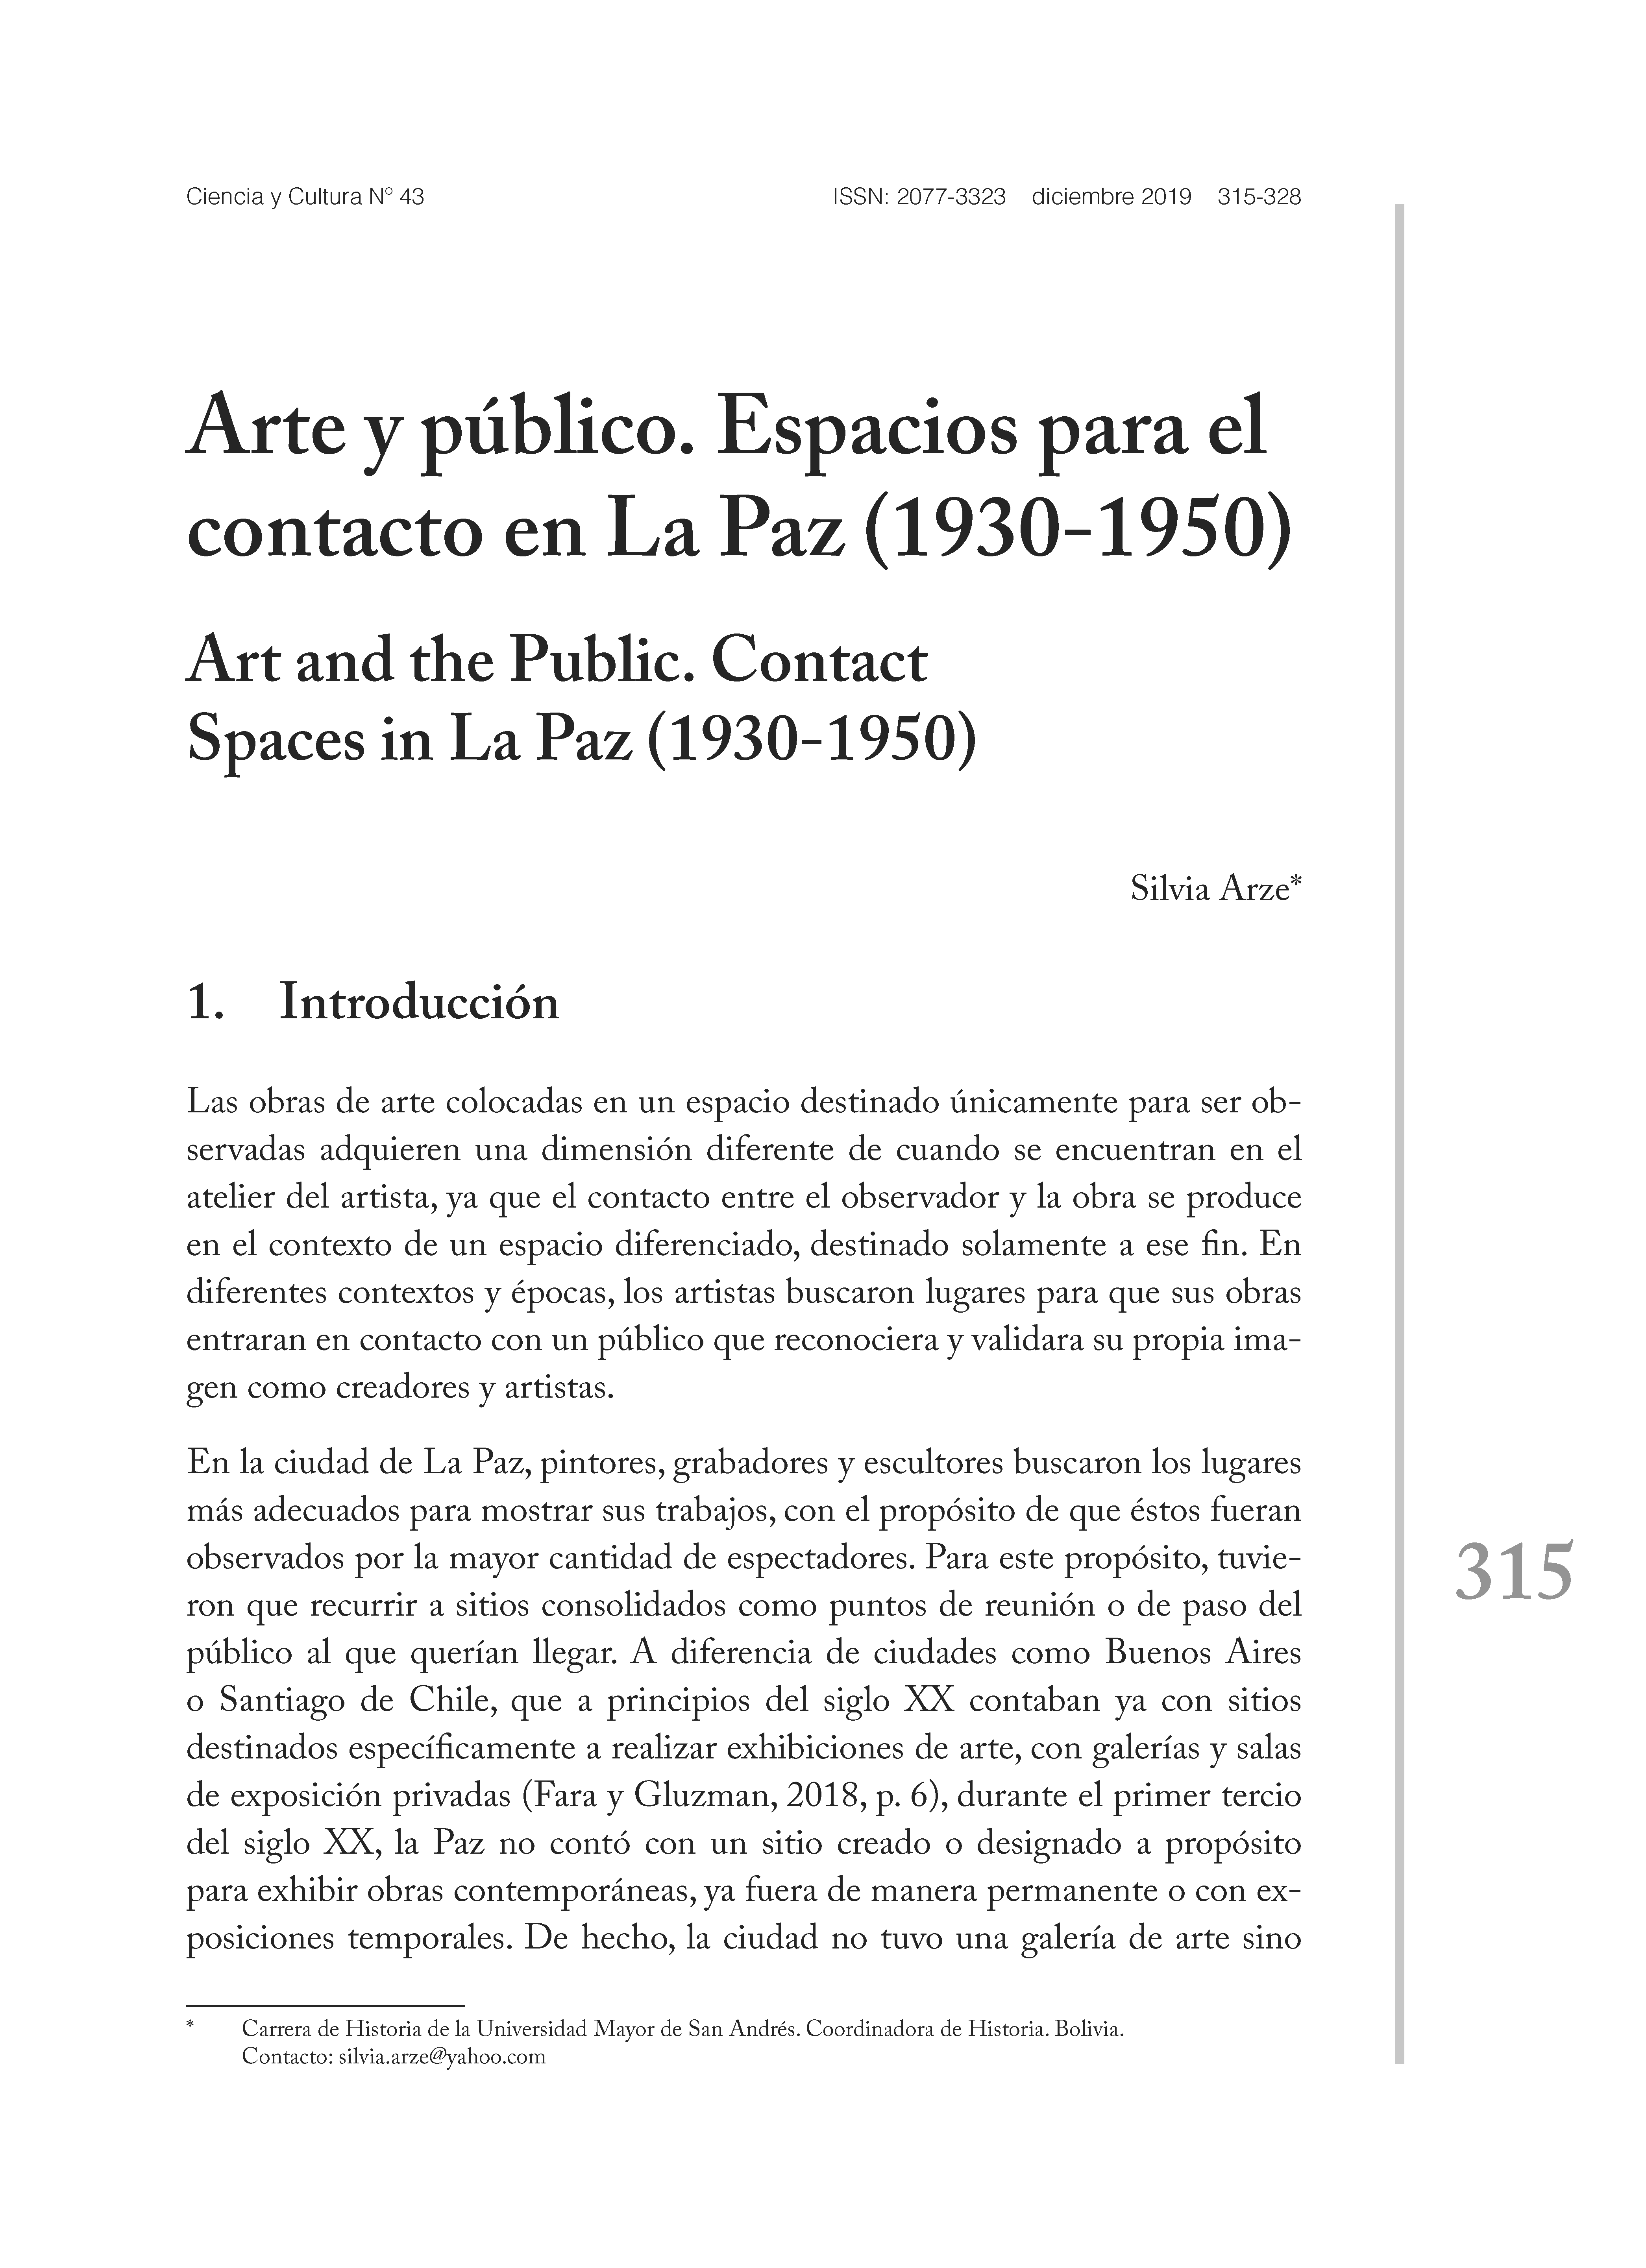 Arte y público. Espacios para el contacto en La Paz (1930-1950)